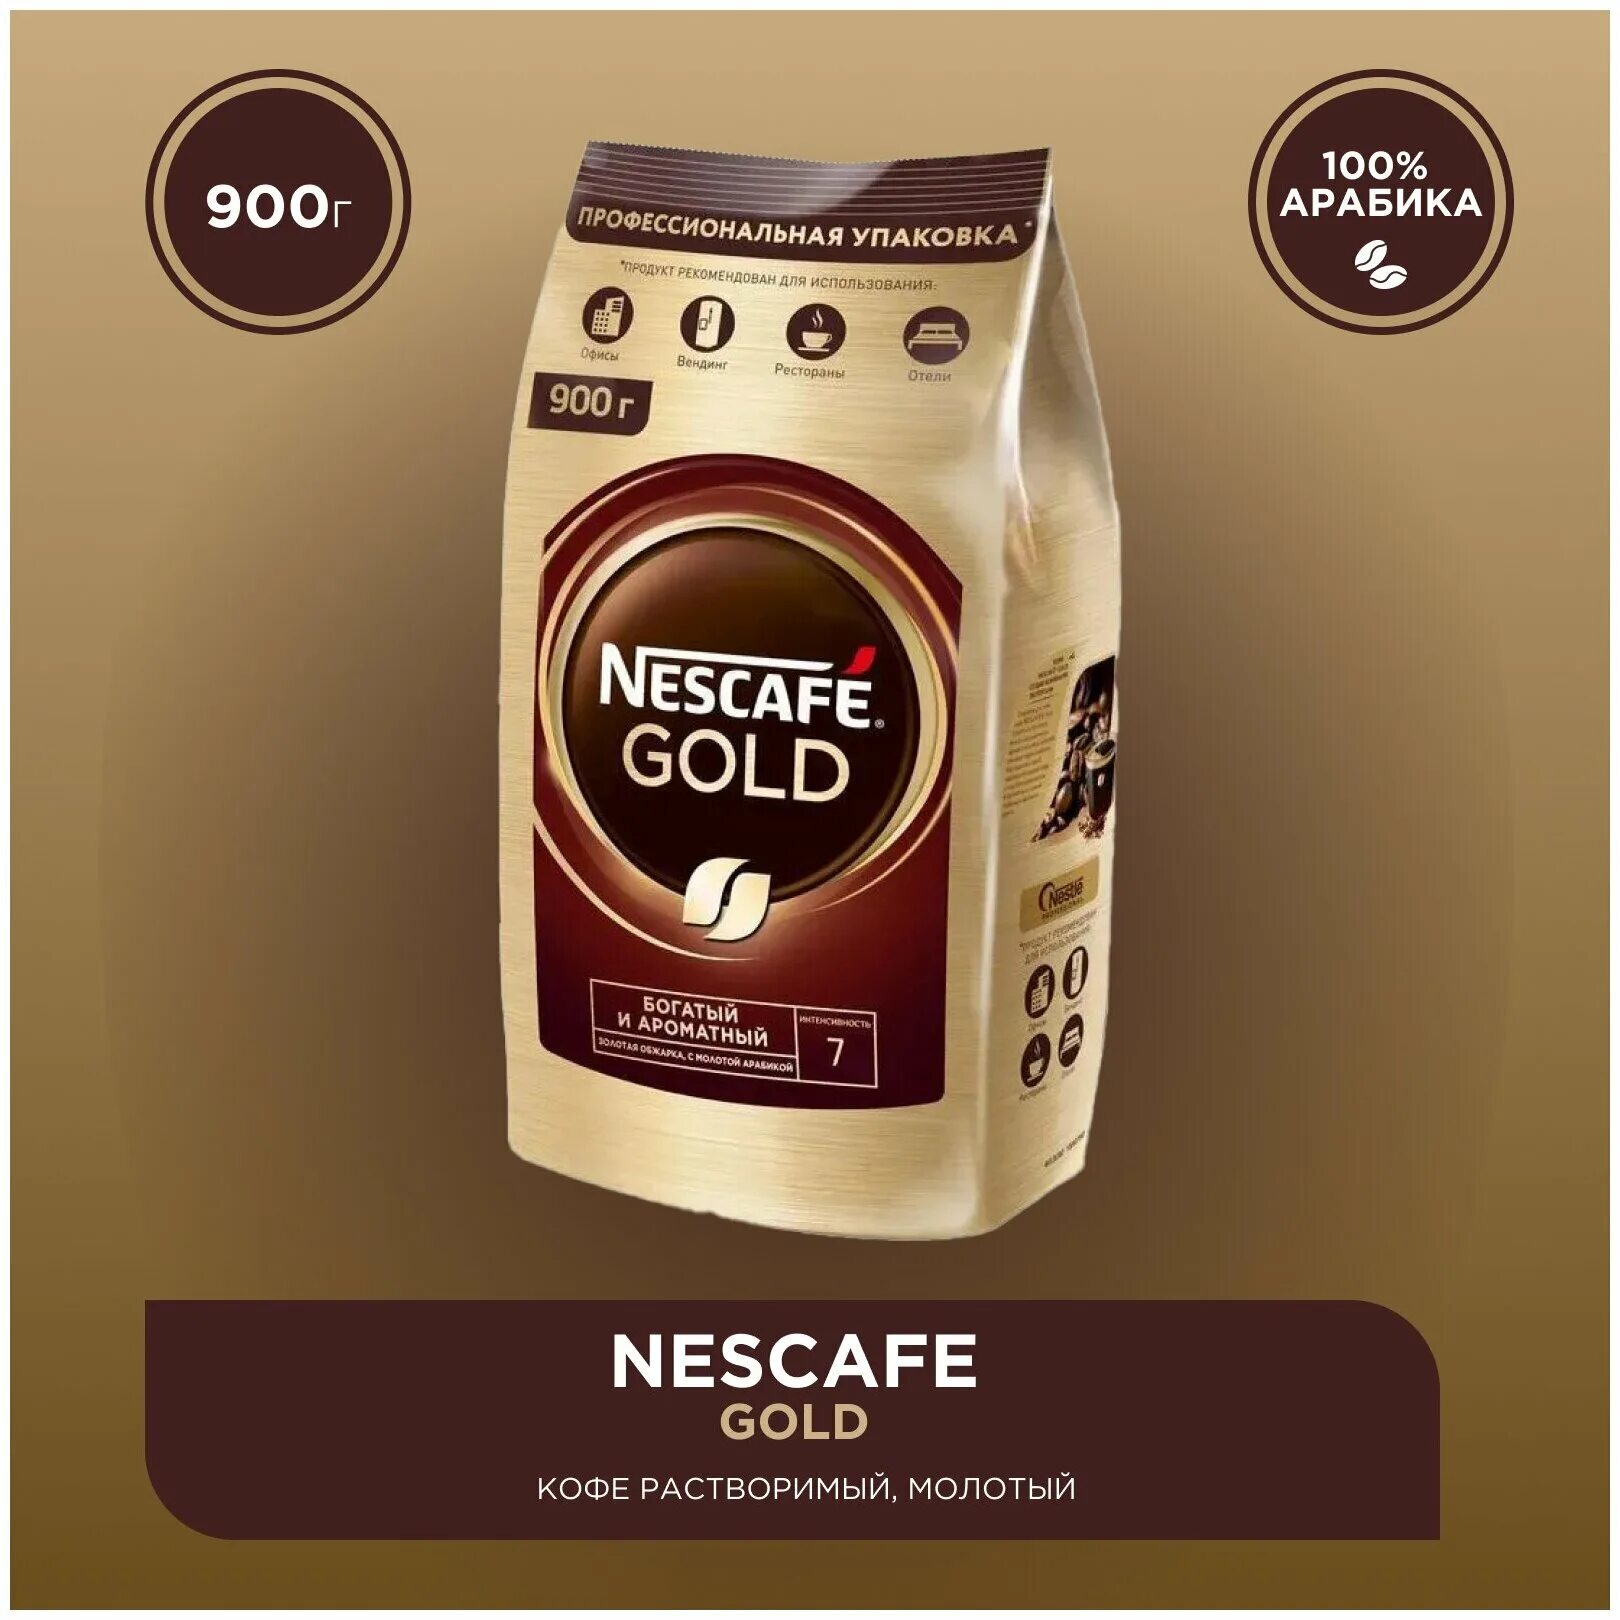 Купить кофе голд 900 гр. Кофе Нескафе Голд 750 гр. Nescafe Gold 900. Кофе растворимый Nescafe Gold 750 г. Нескафе Голд 900 гр.